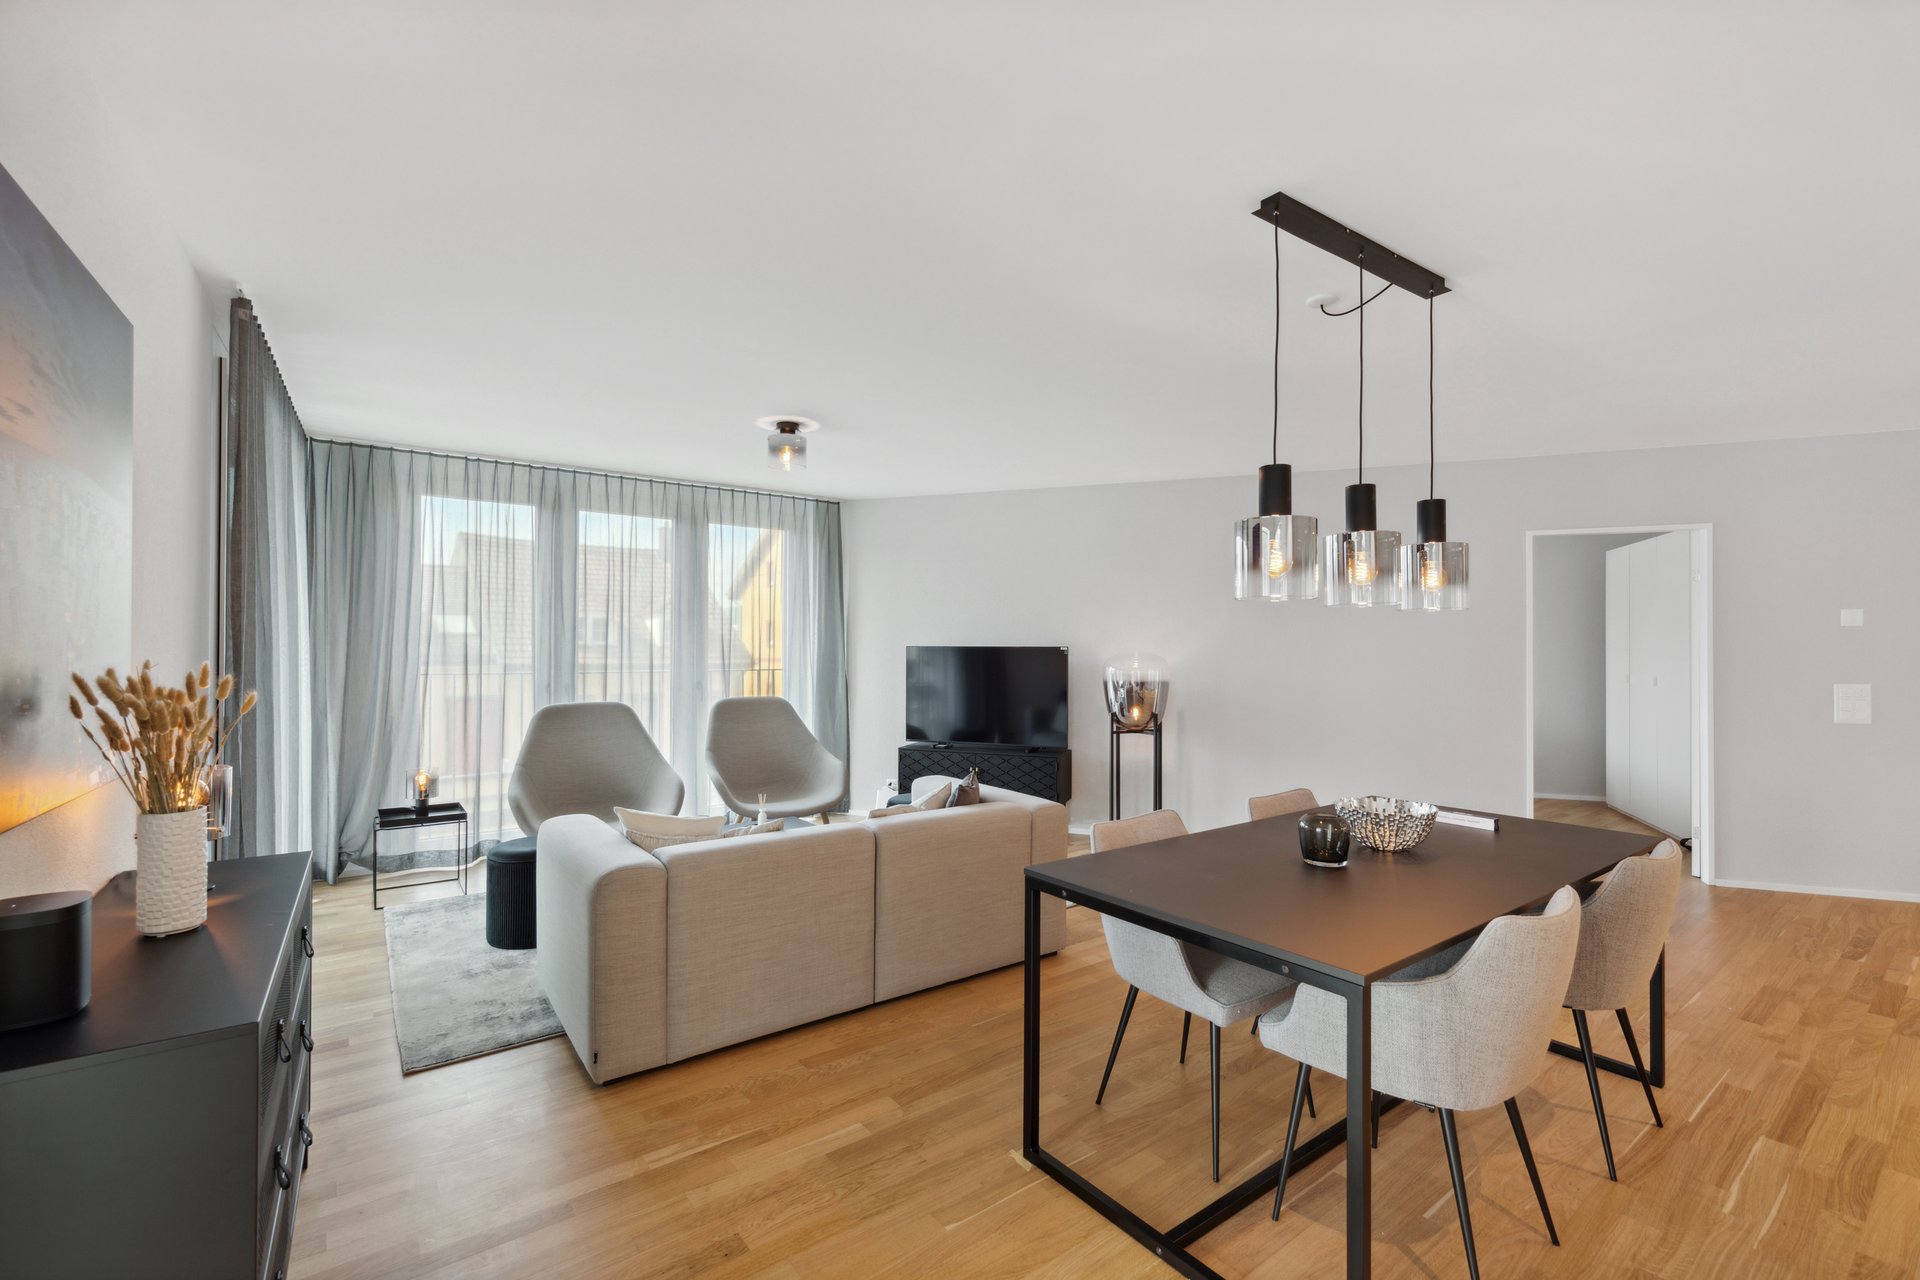 Entdecken Sie stilvolle und komfortable möblierte Wohnungen in Basel. Unsere Apartments bieten hochwertige Möbel und erstklassige Ausstattung für Ihren optimalen Wohnkomfort. Genießen Sie luxuriöses Wohnen in einer der schönsten Städte der Schweiz. Finden